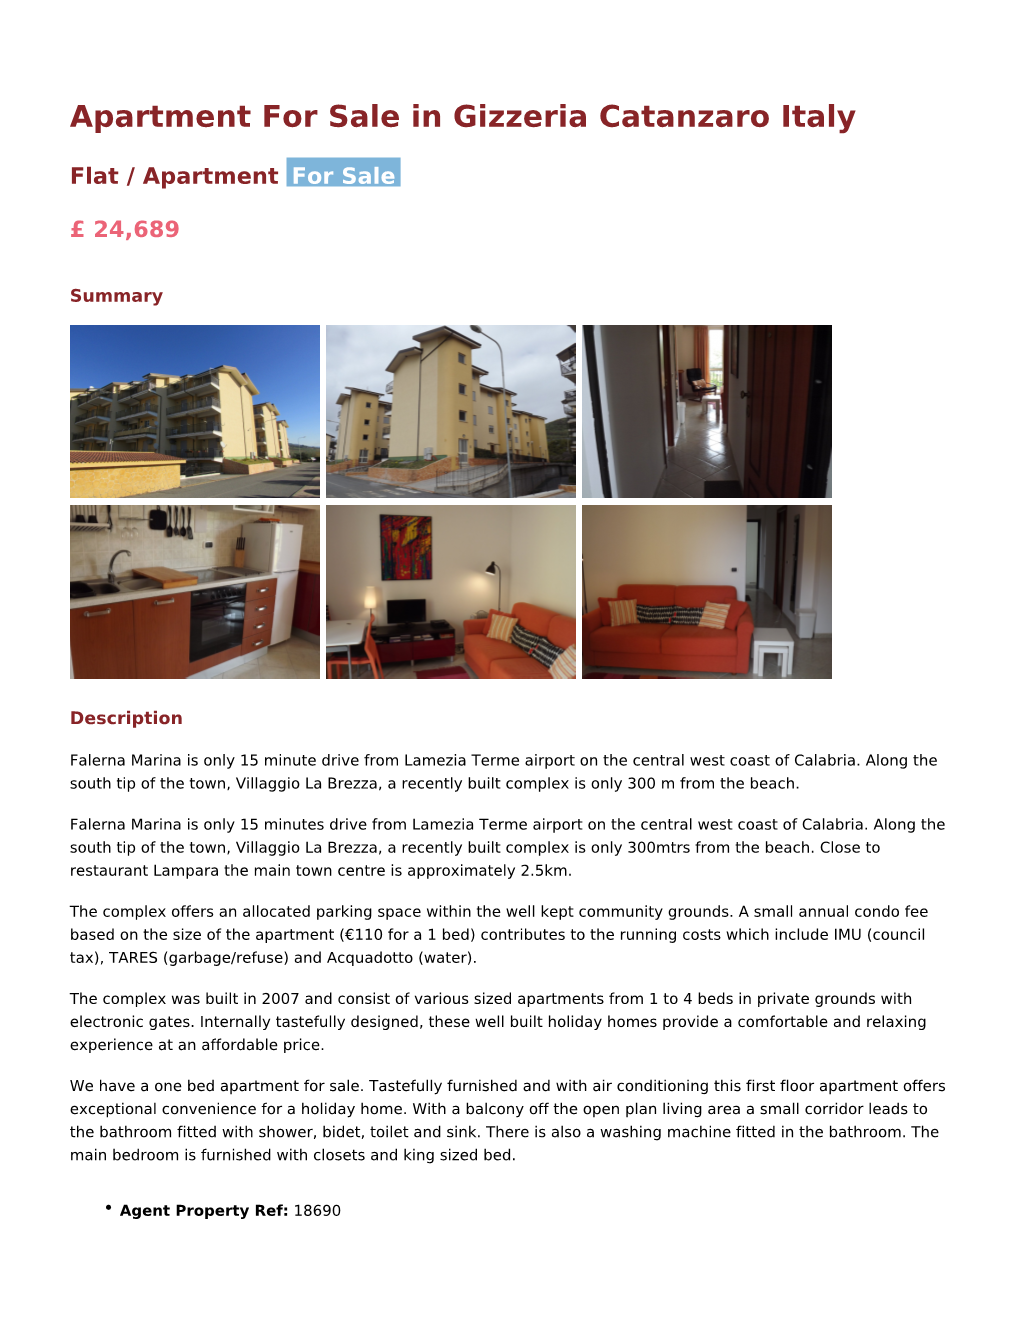 Apartment for Sale in Gizzeria Catanzaro Italy